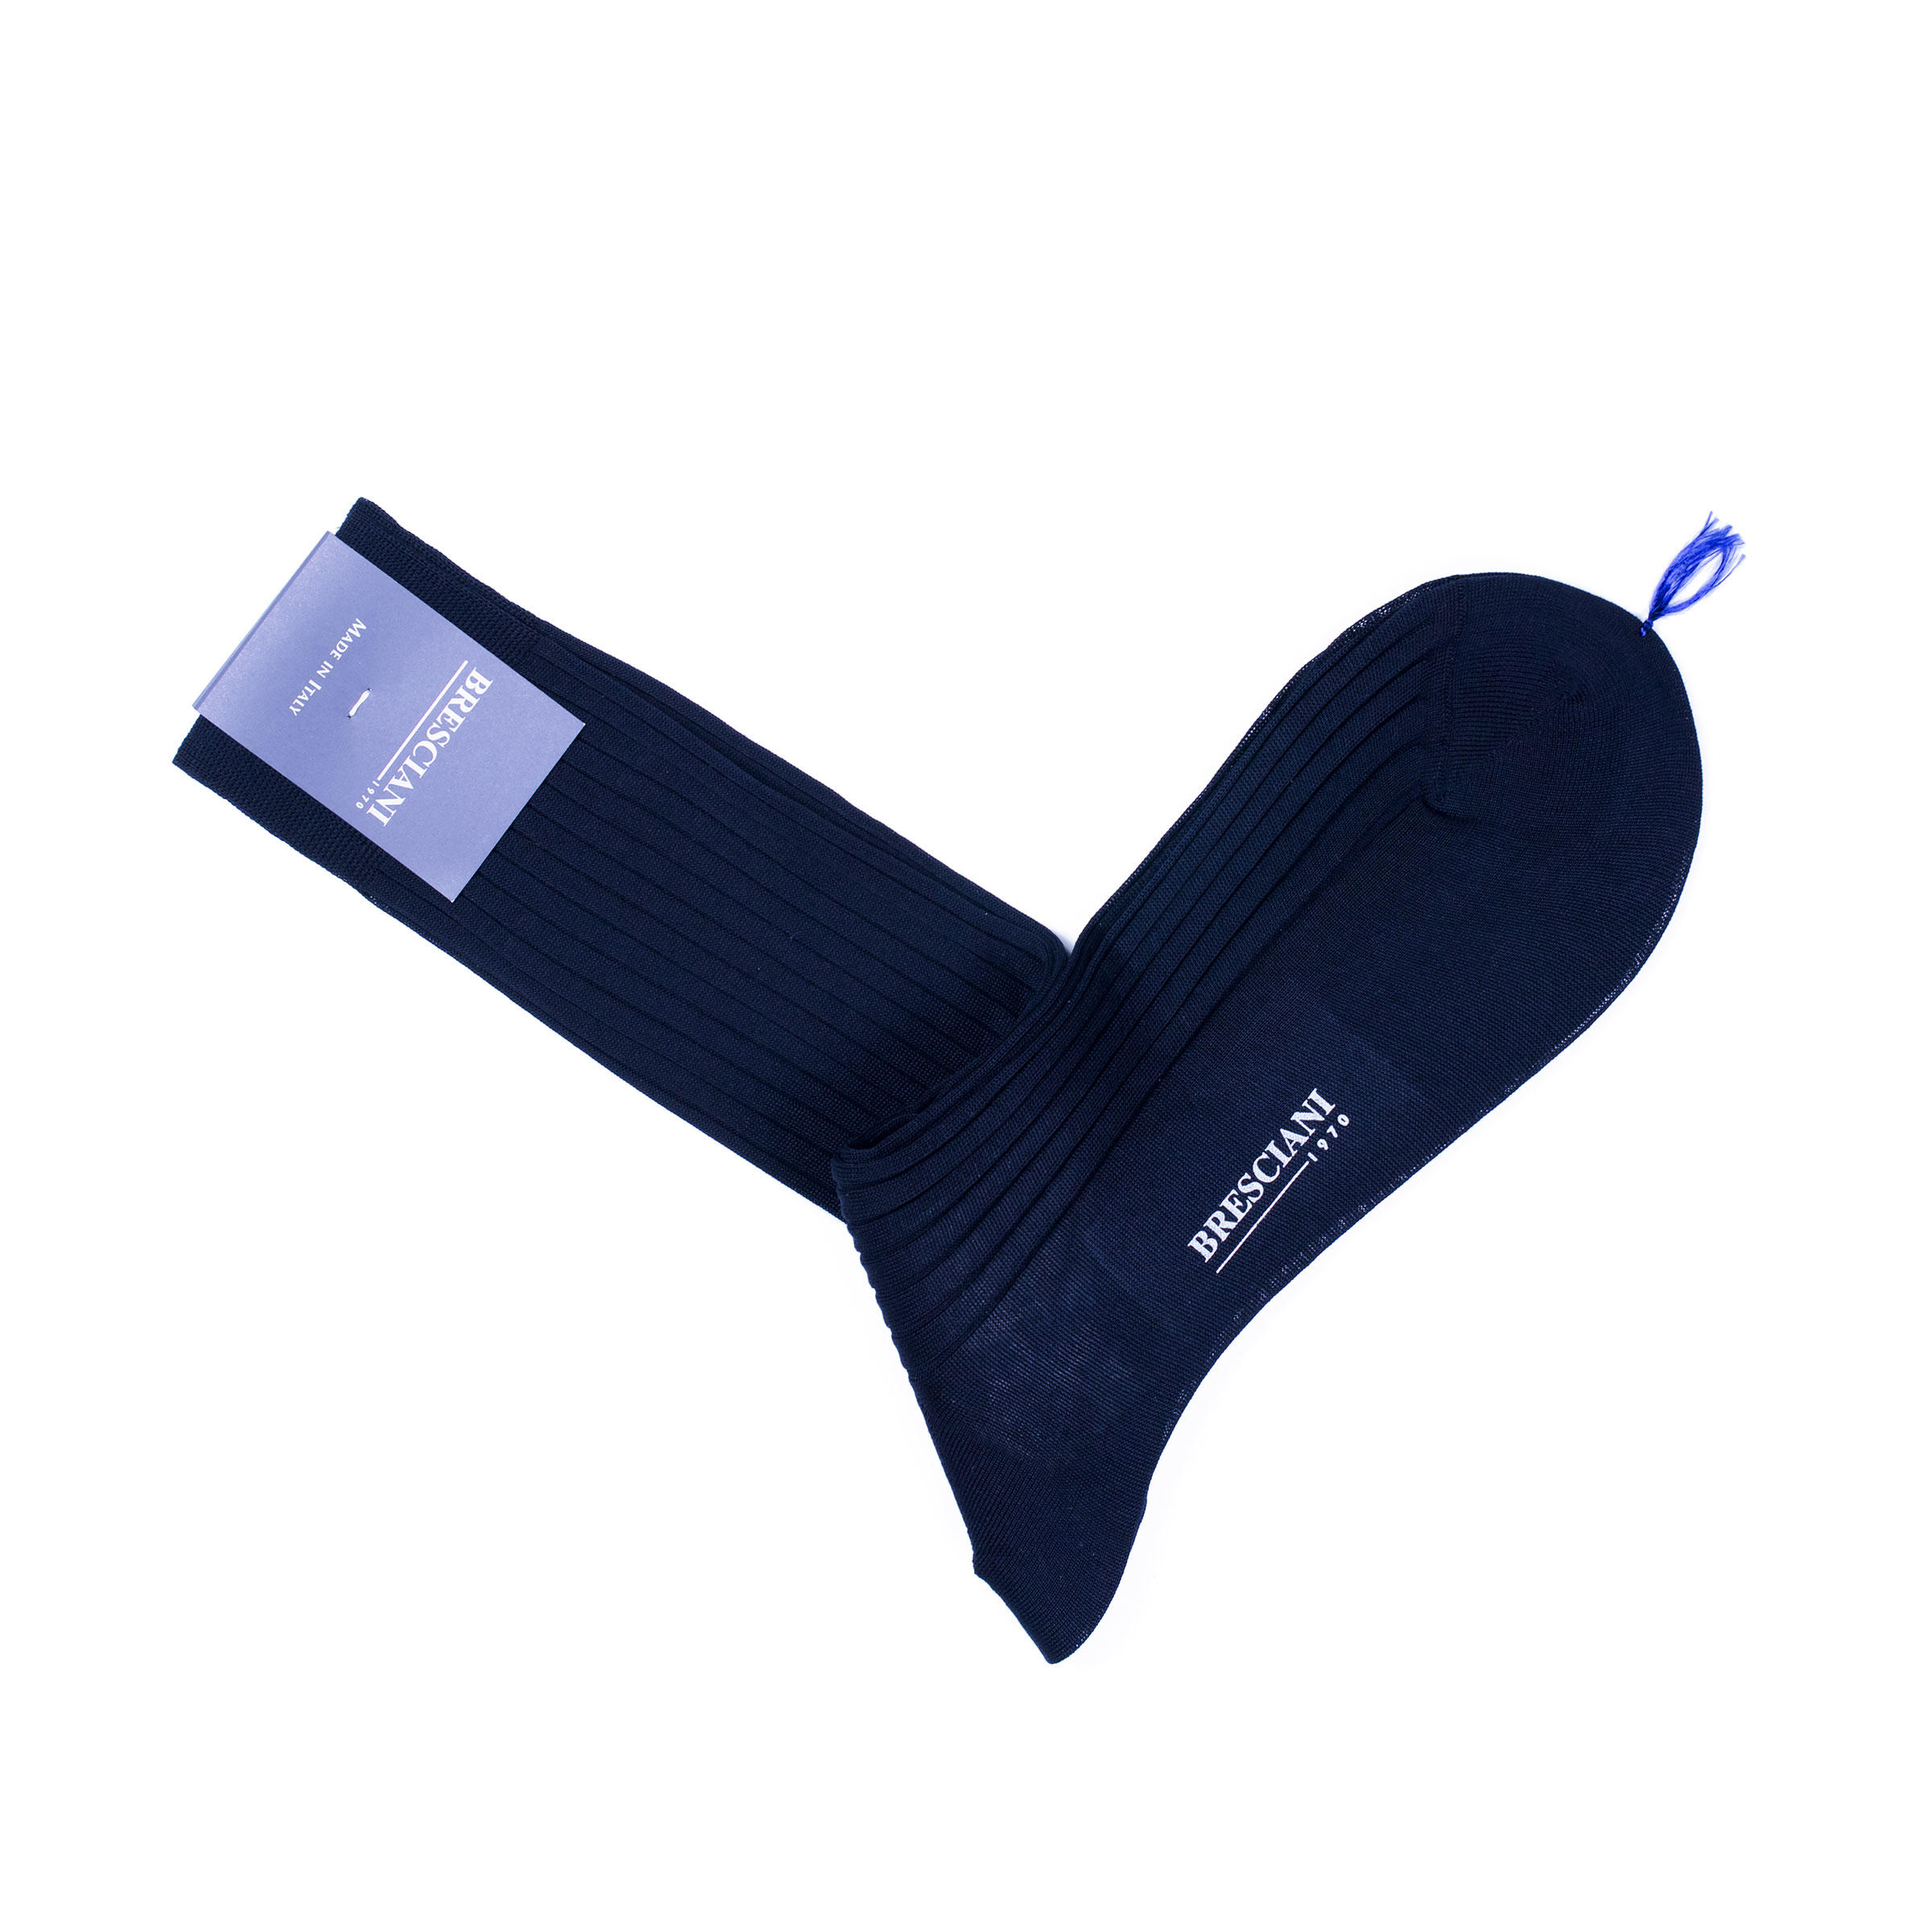 Bresciani cotton socks in navy blue colour